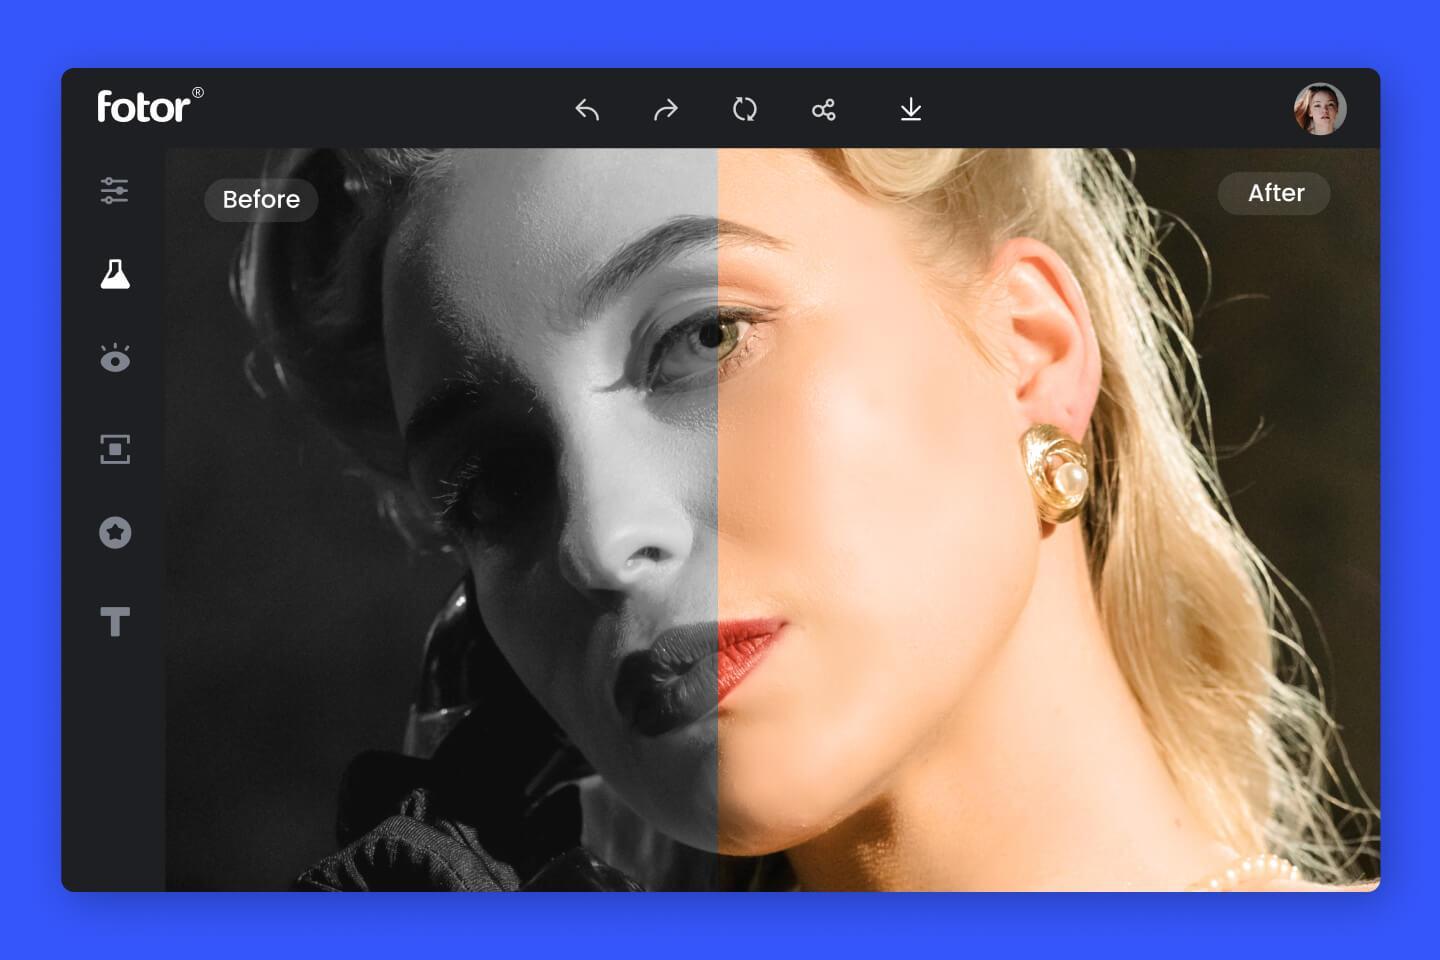 AI Photo Colorizer  Colorir fotos em preto e branco em segundos